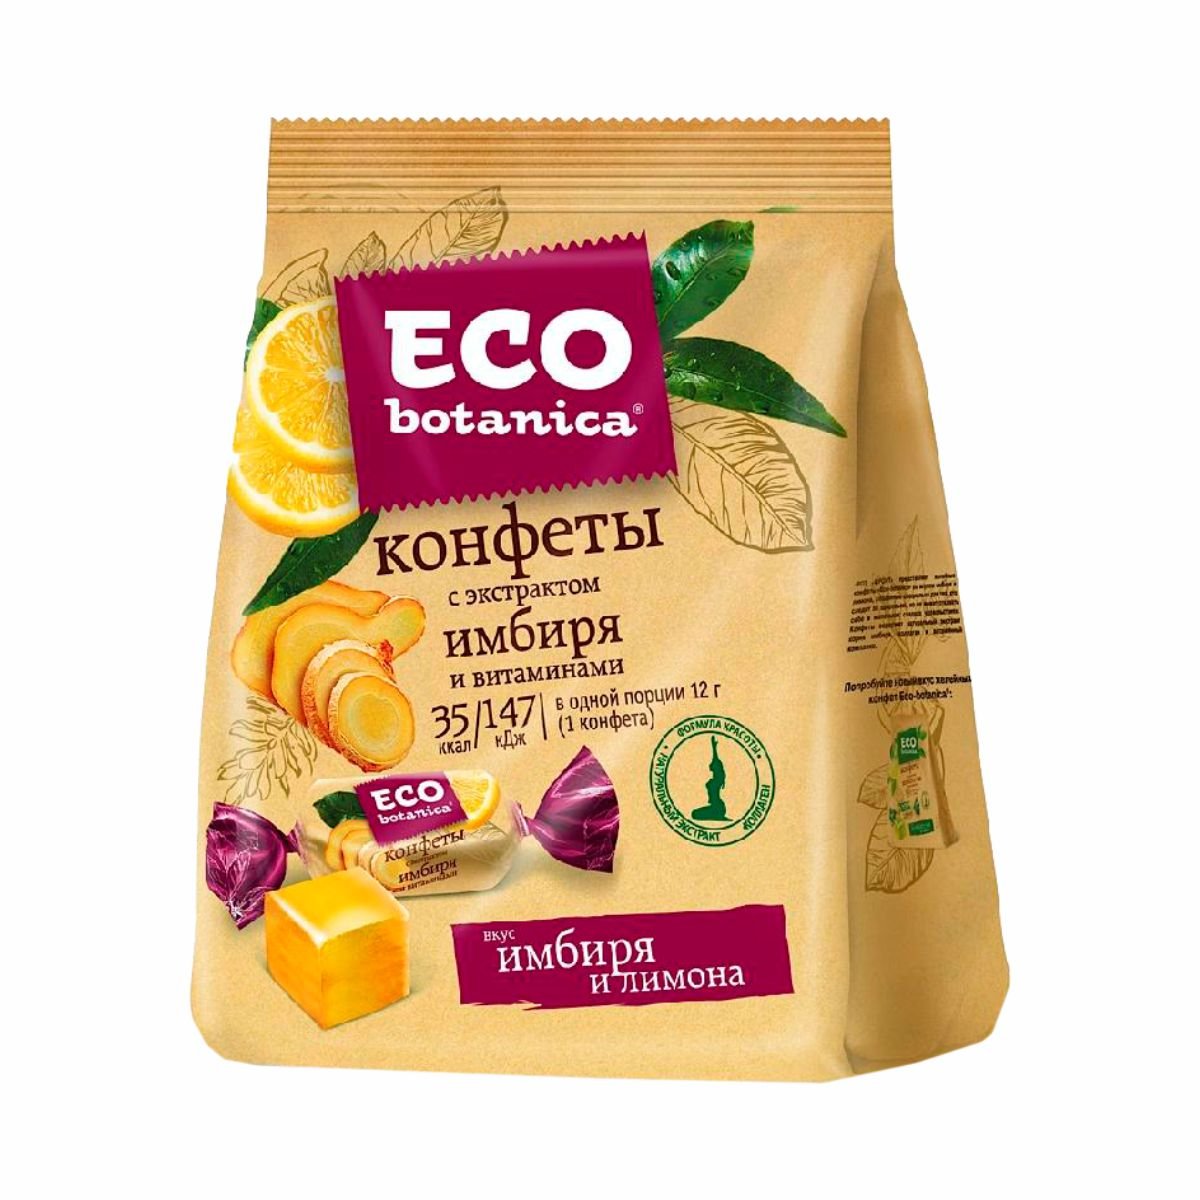 ECO botanica конфеты ЭКО ботаника с экстрактом имбиря и витаминами 200г